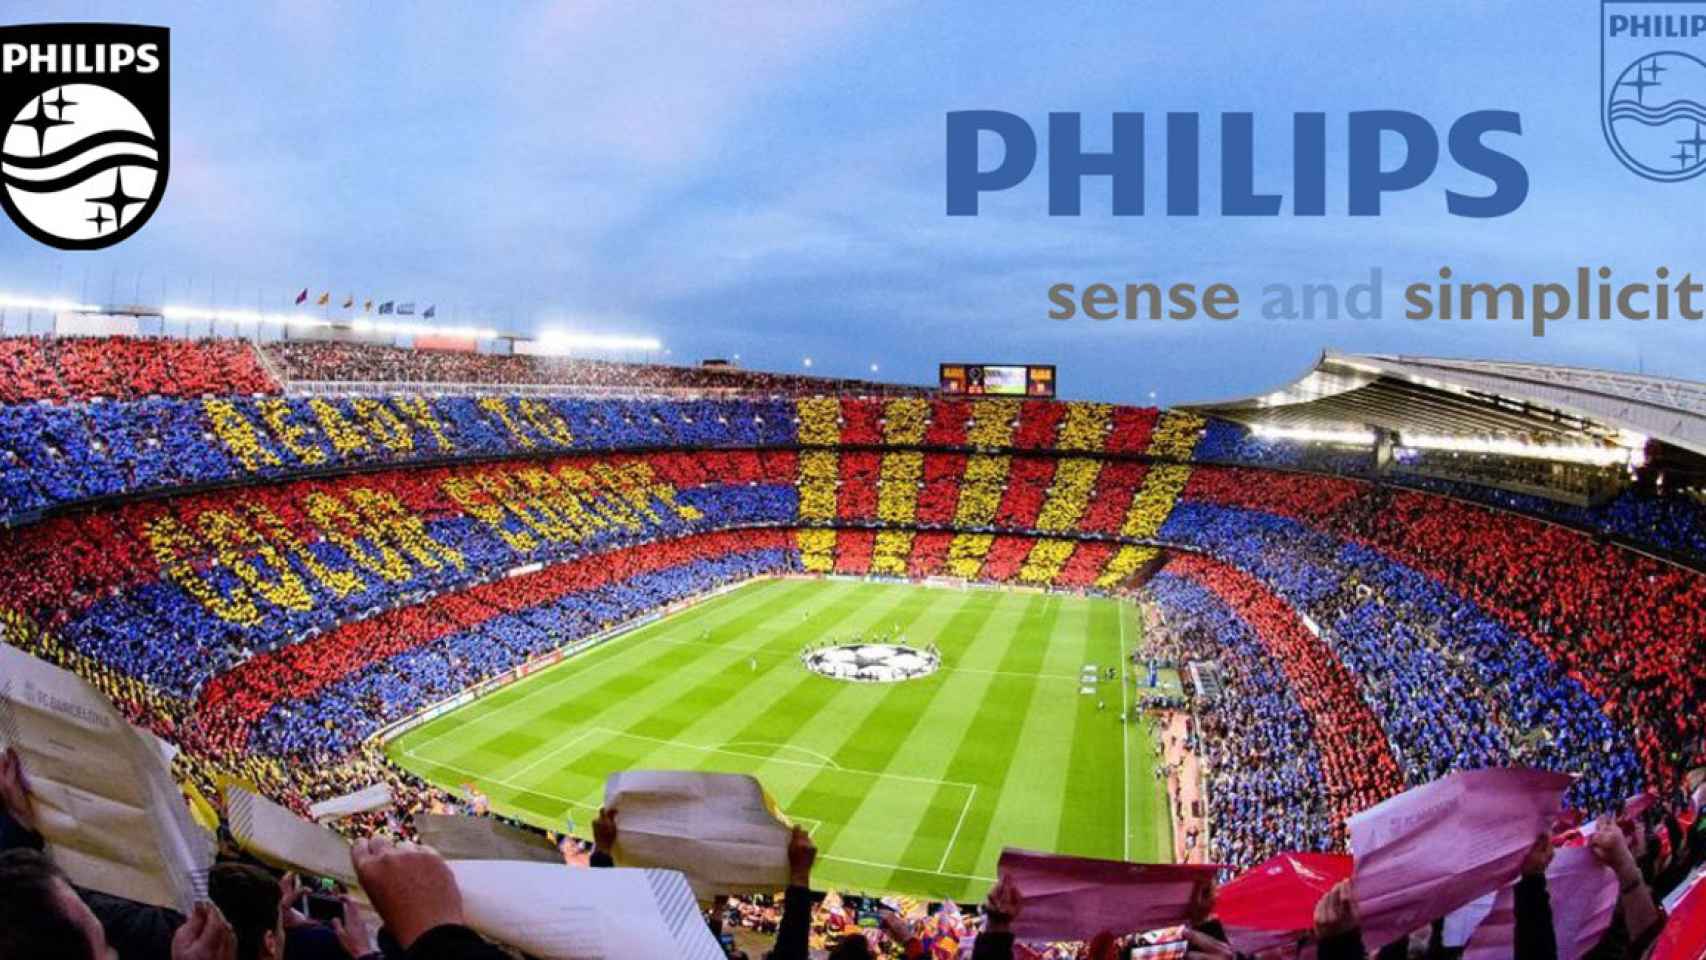 FOTOMONTAJE del Camp Nou junto con el logo de Philips